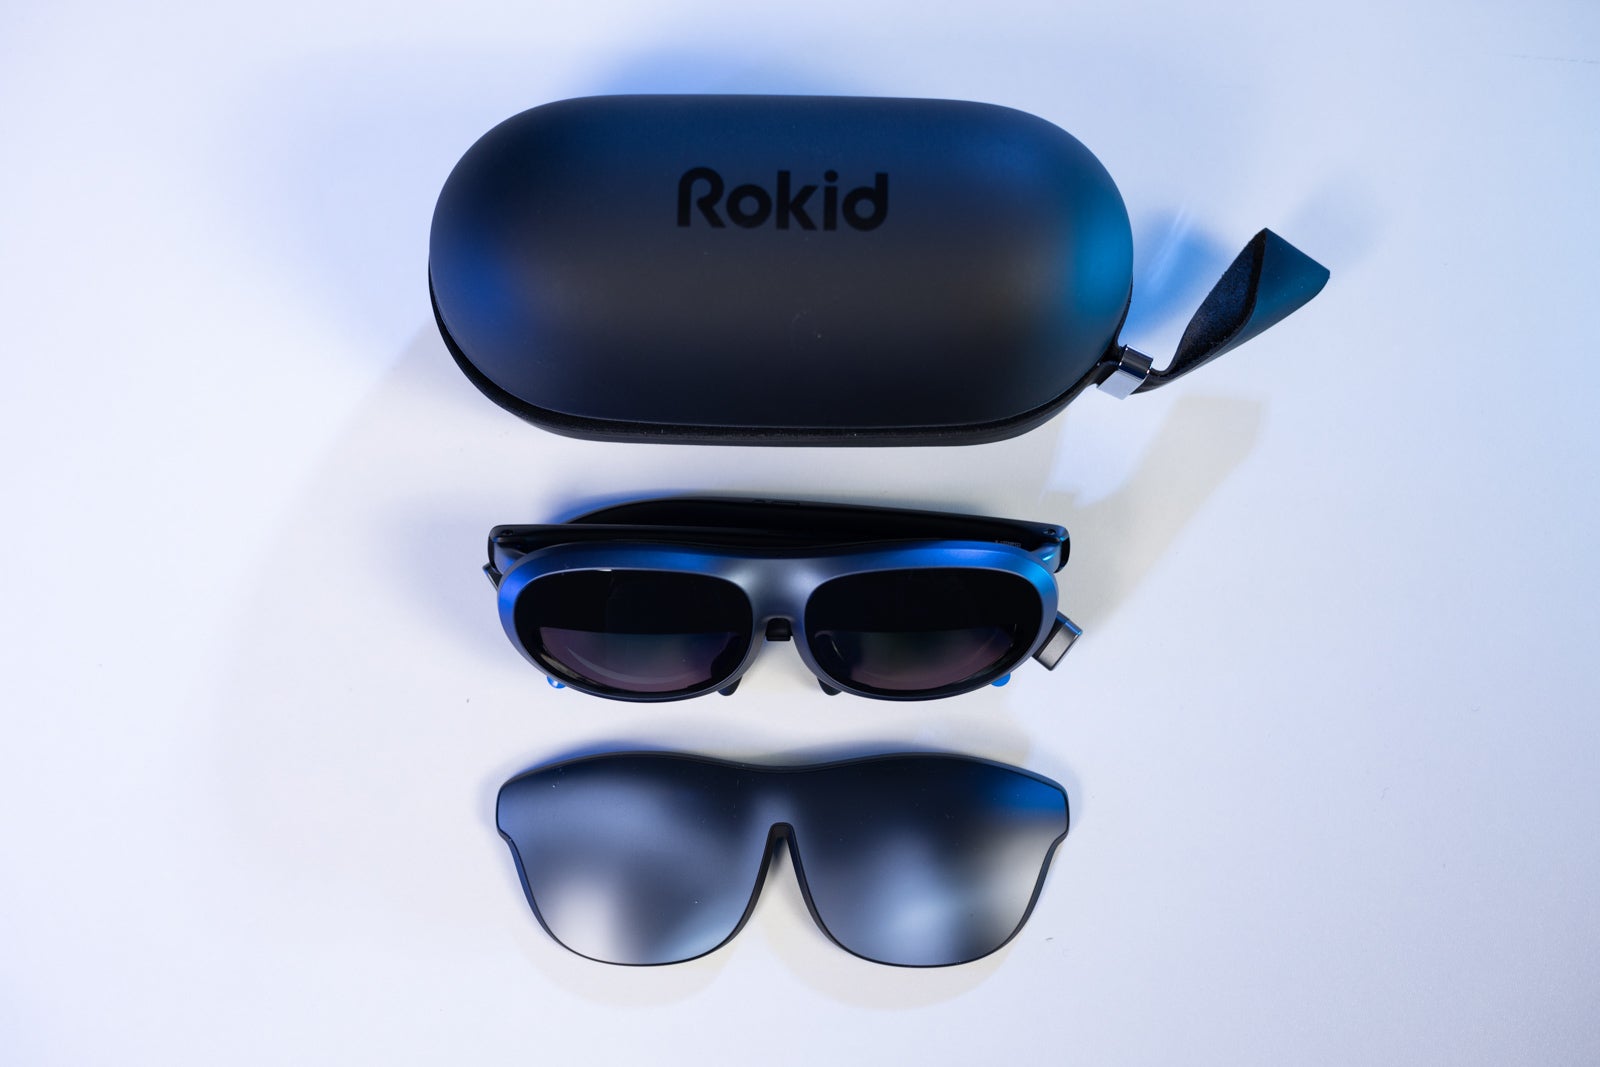 (Crédito da imagem - Phonearena) Os óculos Rokid Max, a capa de transporte e a tampa da lente - Rokid Max Review: Tela e som impressionantes, tudo no fator de forma de óculos de sol